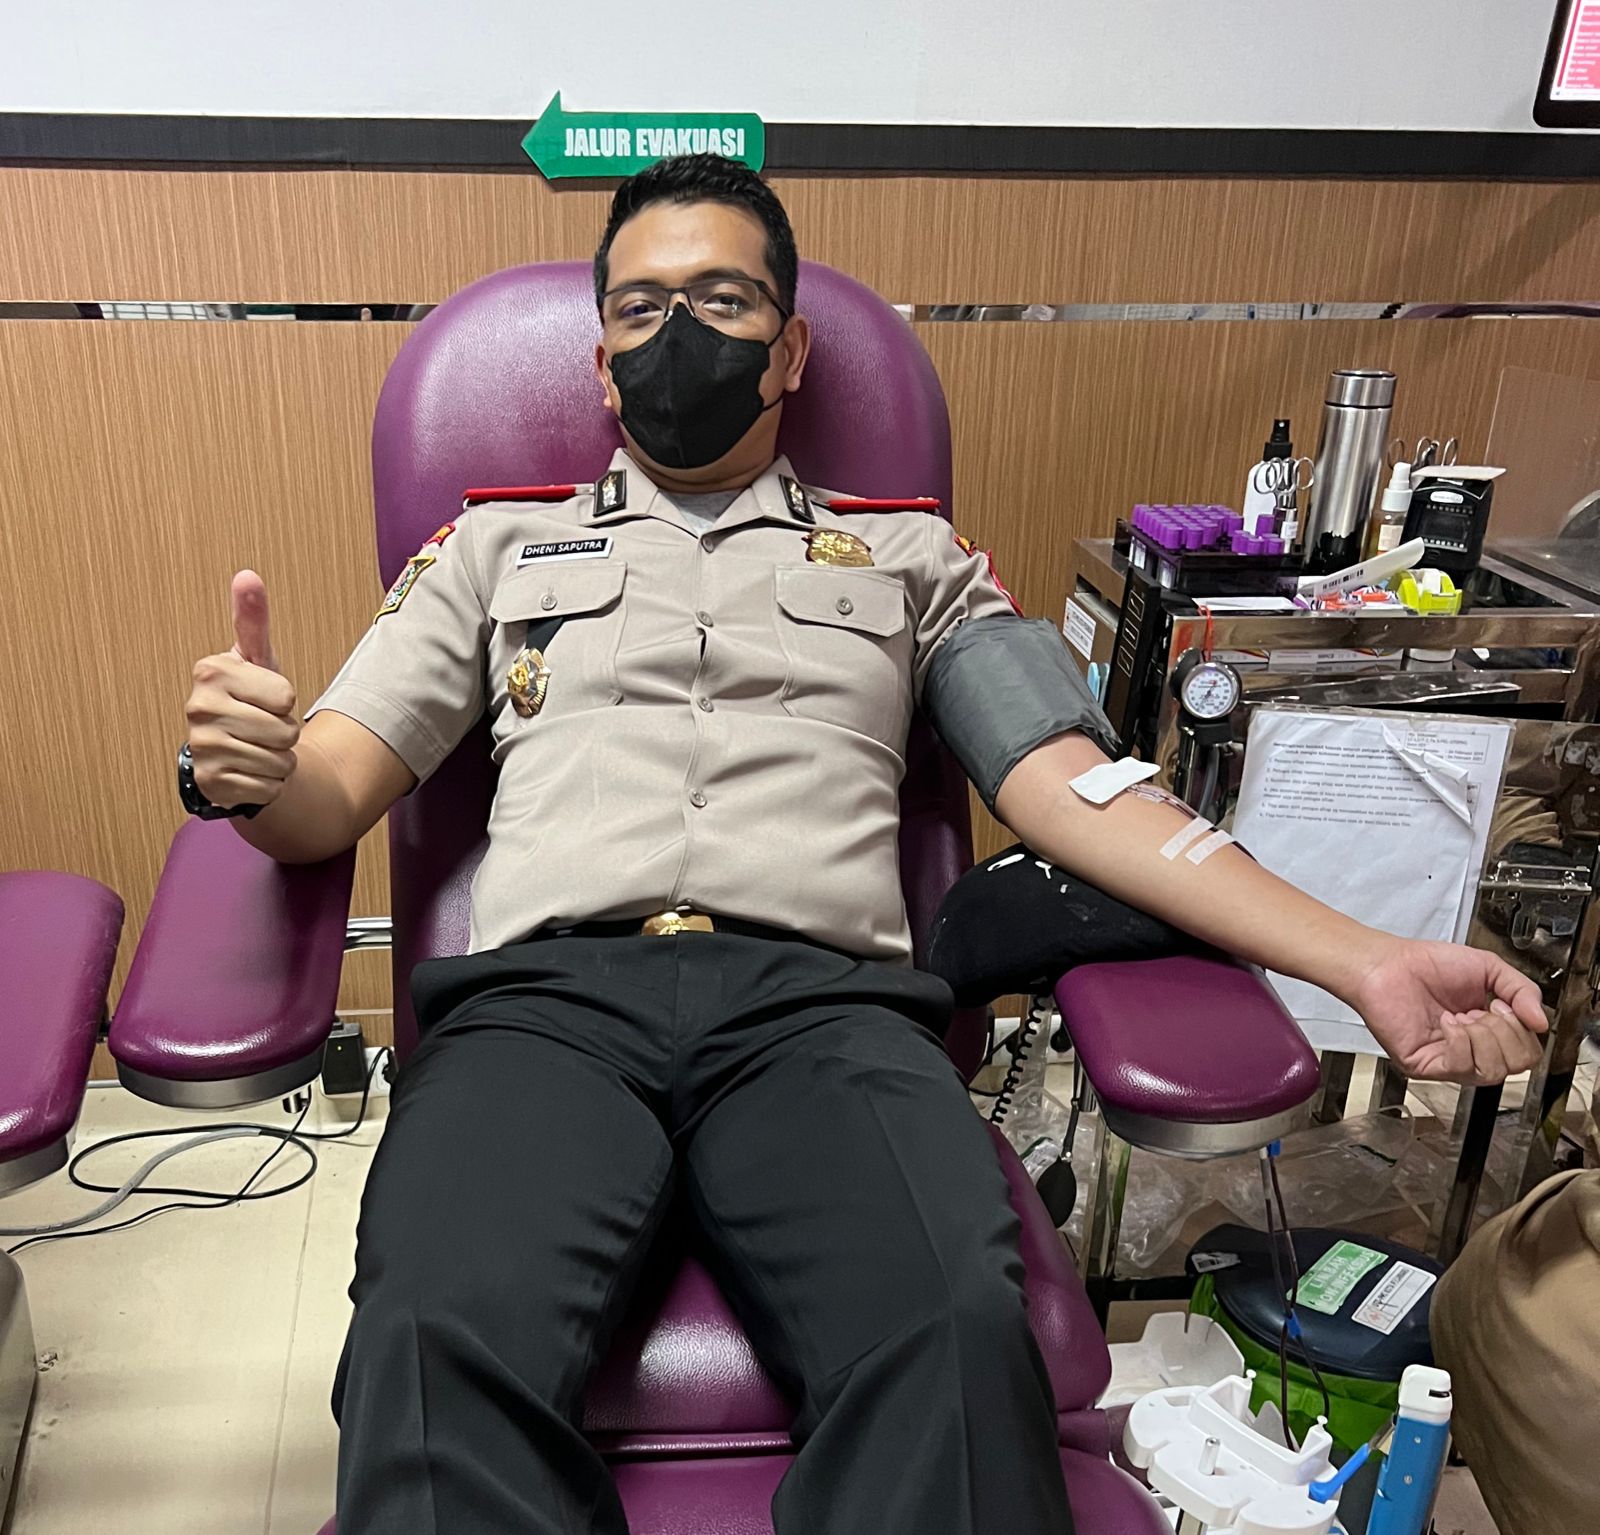 Jumlah Produksi Darah Indonesia Rendah, Perwira Polri Kampanyekan Donor